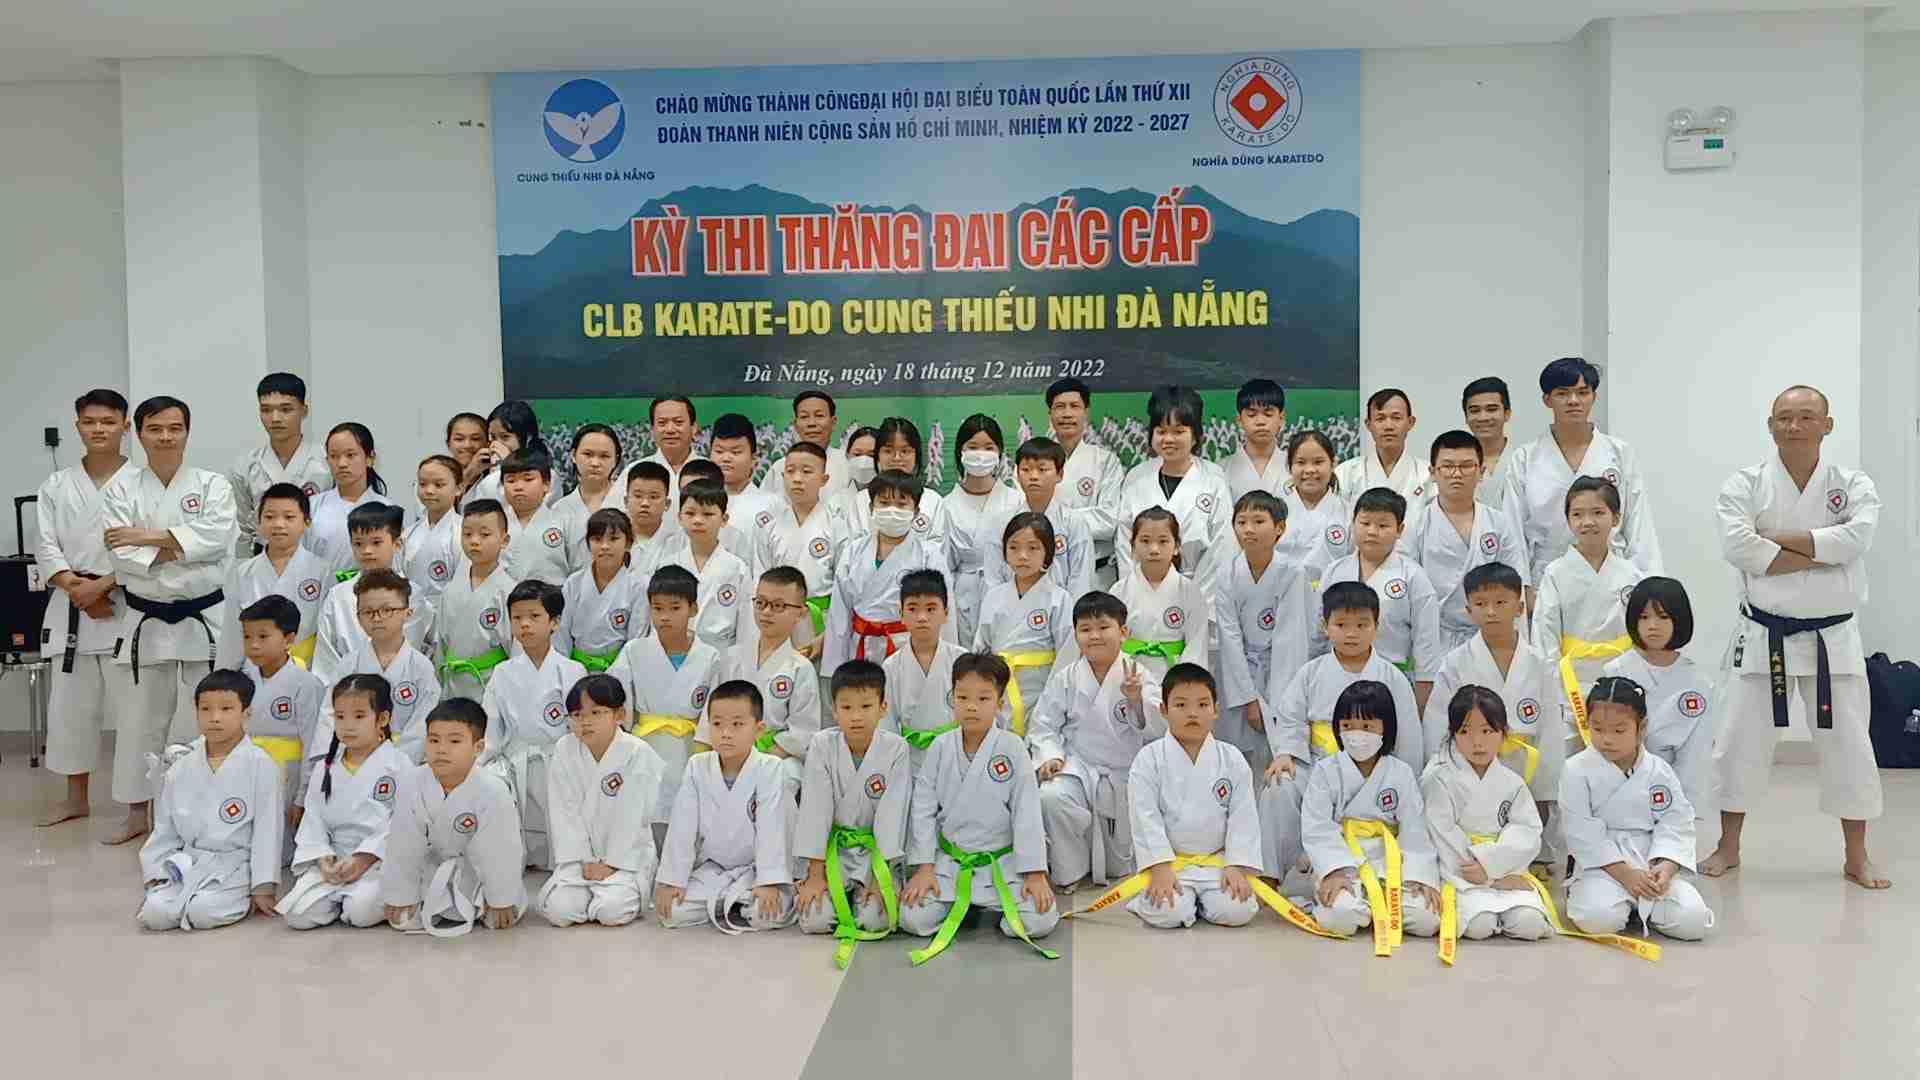  Clb Karatedo Thiện Nguyện Hermann Gmeiner địa điểm học võ tại Đà Nẵng